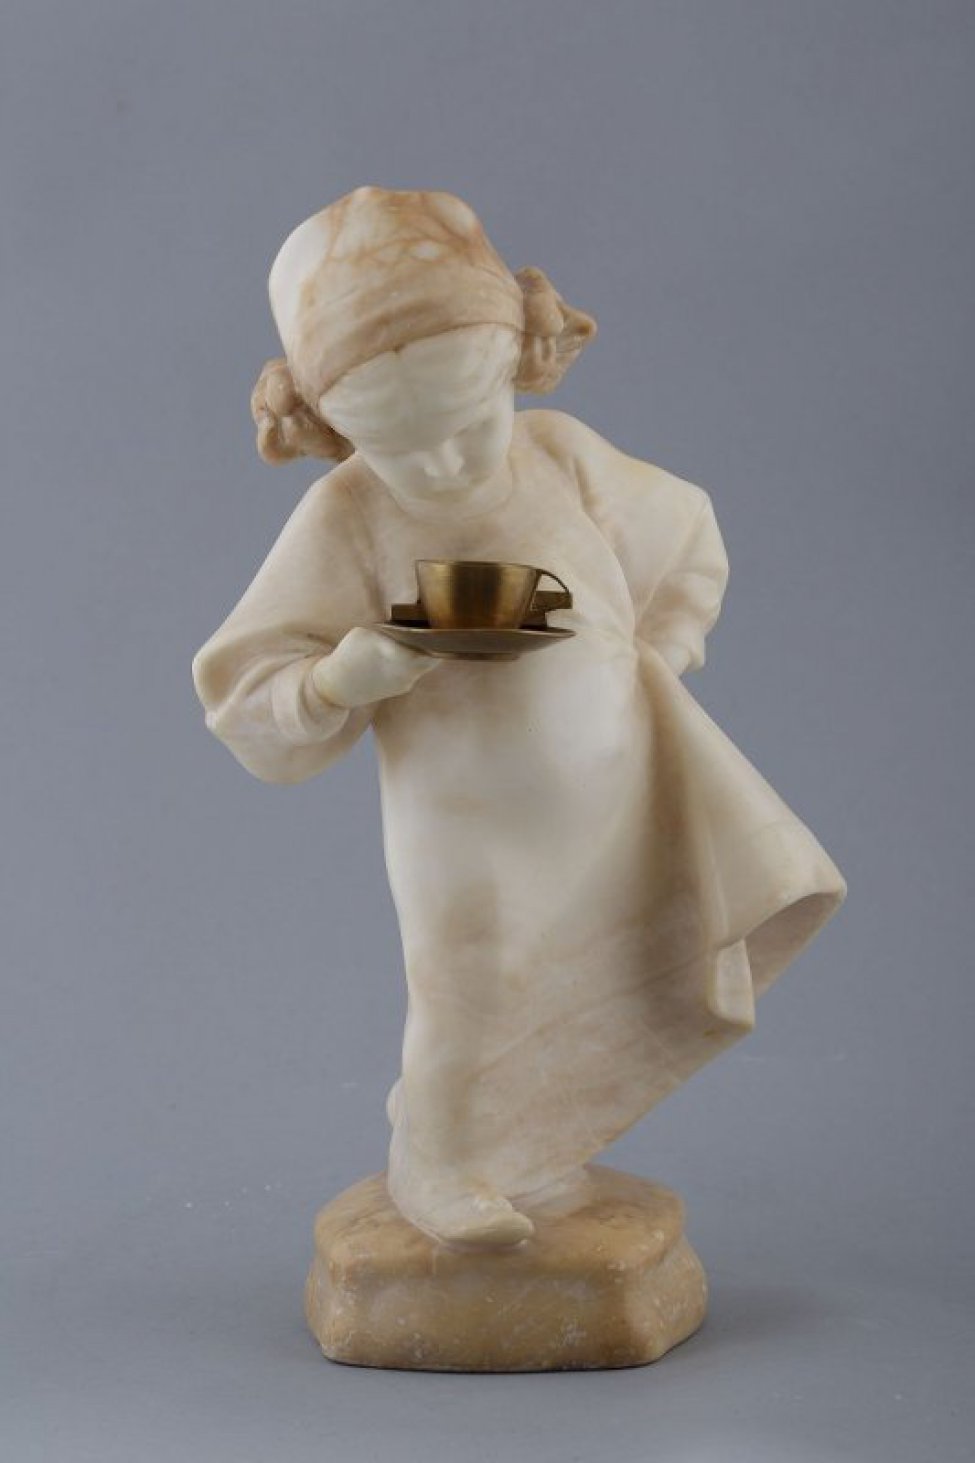 На выпуклом четырехугольном постаменте изображена девочка в широком платье, шапочке с бантиками. В правой руке - чашка с блюдцем, левой рукой придерживает платье, образуя волан. Голова опущена вниз, взгляд устремлен на чашку.